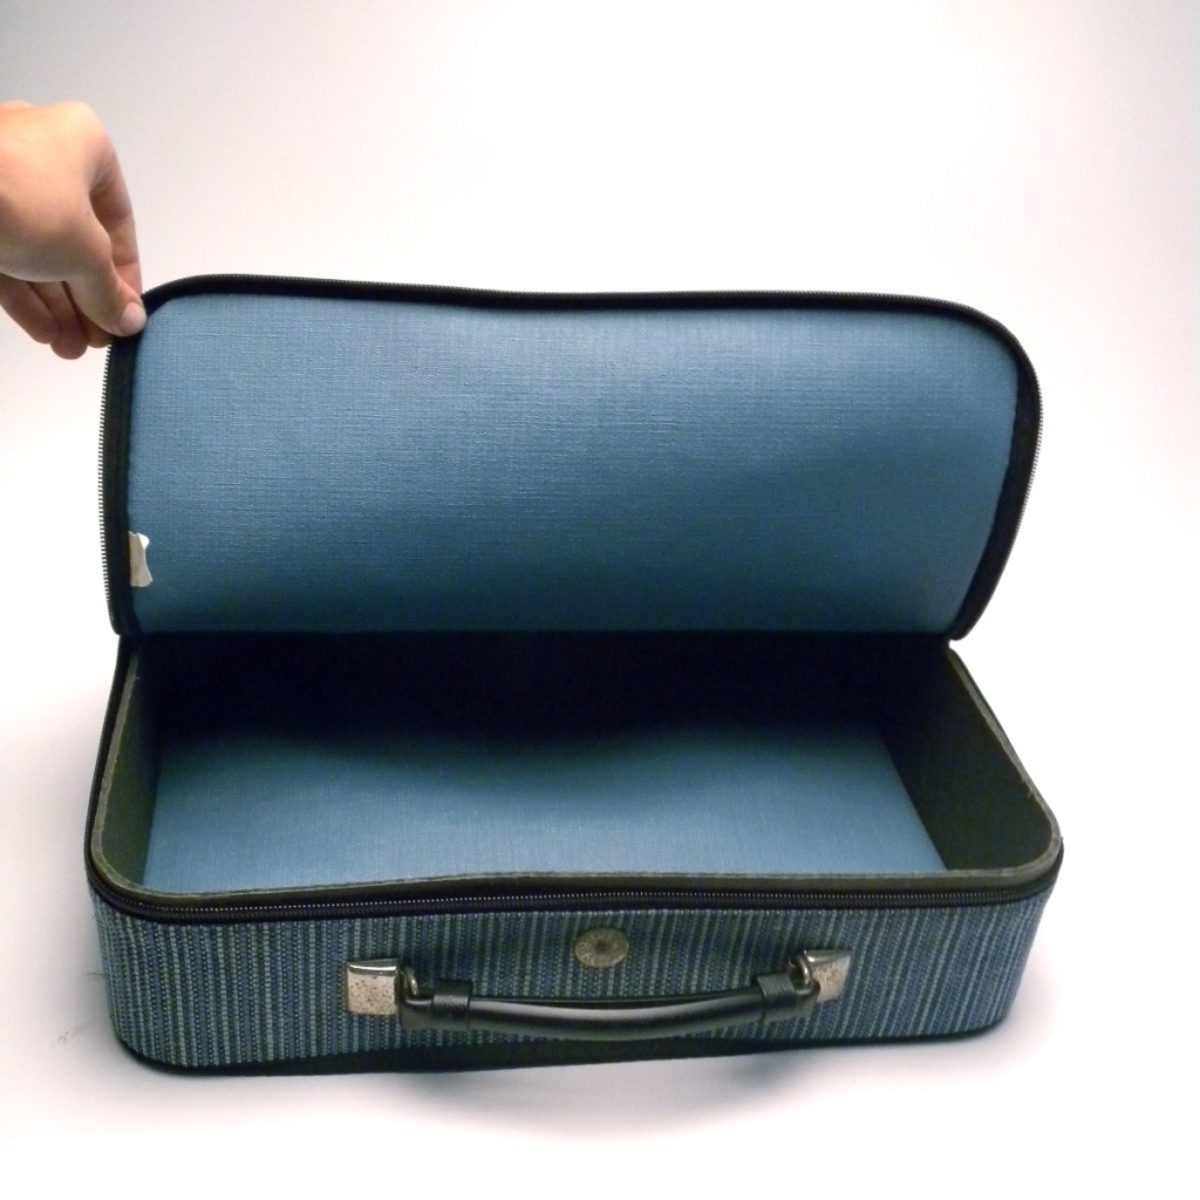 Ανοίγουν την βαλίτσα σας σε κλάσματα δευτερολέπτου – Δείτε βίντεο